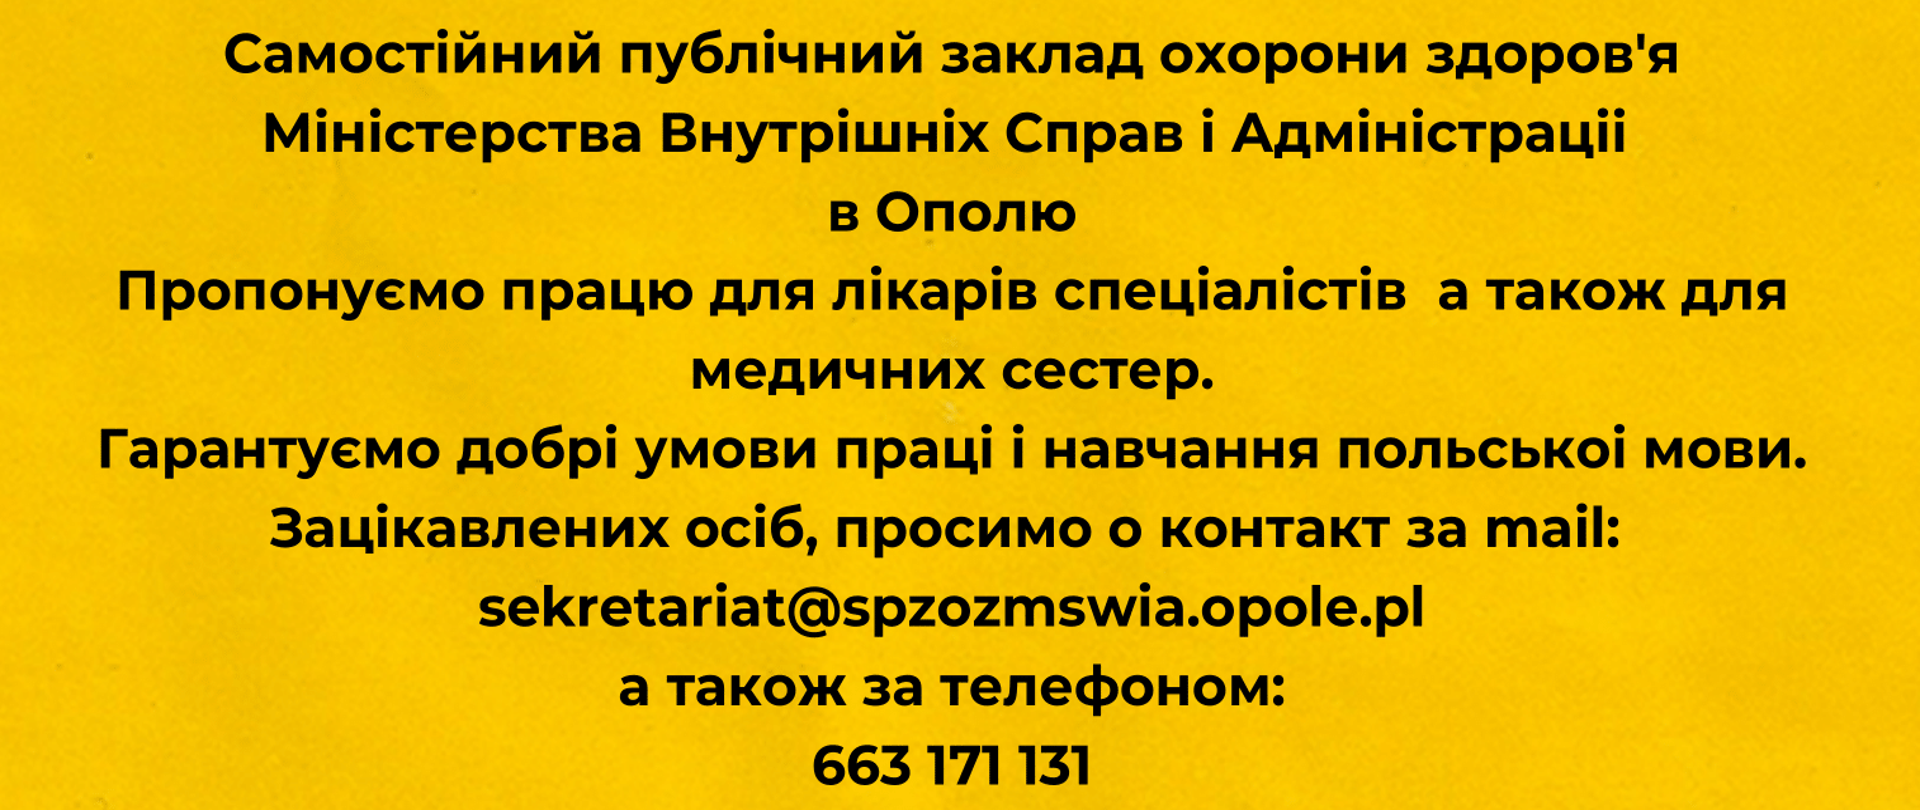 Ulotka informacyjna Praca w SP ZOZ MSWiA w Opolu dla Ukraińców
Oferujemy pracę zarówno dla specjalistów, jak i dla pielęgniarek. Gwarantujemy dobre warunki pracy oraz naukę języka polskiego. Zainteresowane osoby prosimy o kontakt mailowy: sekretariat@spzozmswia.opole.pl oraz telefoniczny: 663 171 131 Kontakt osobisty: W Biurze Instytucji (budynek Polikliniki III piętro, biuro 317)